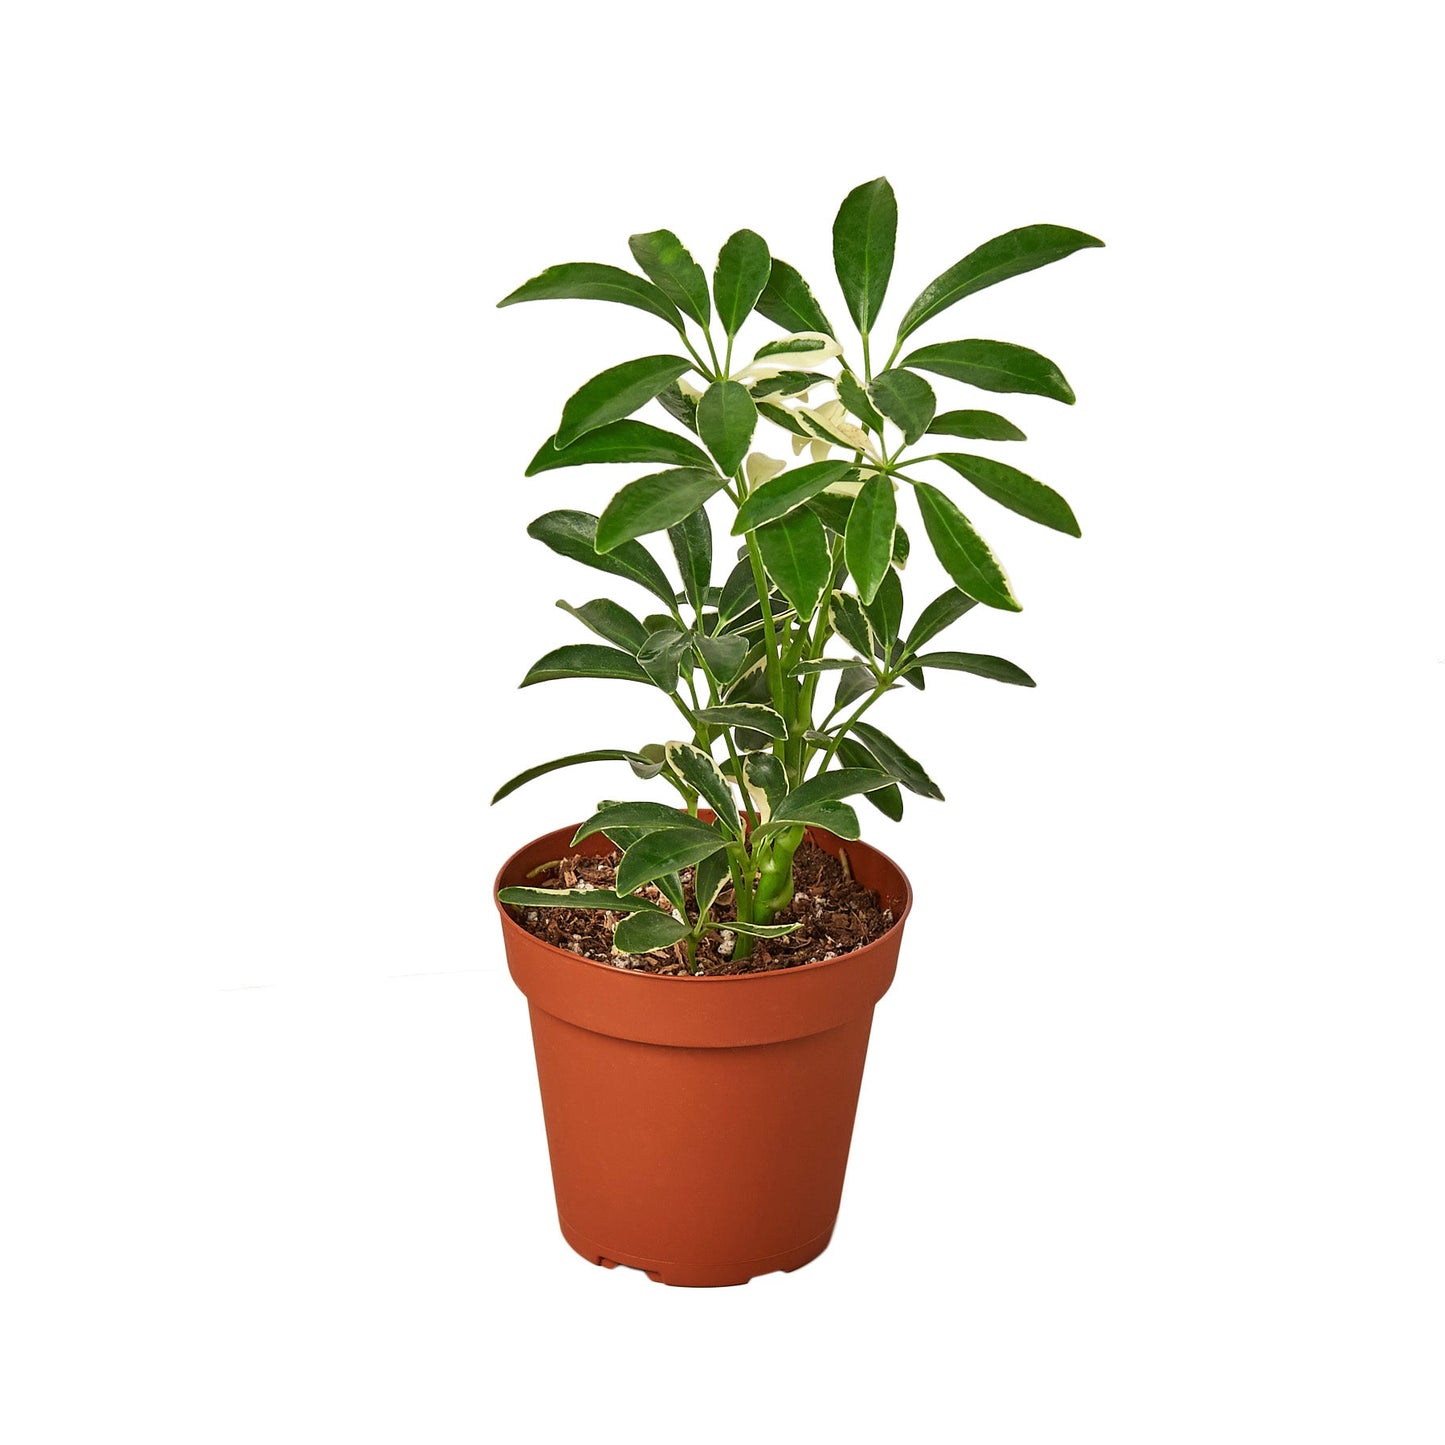 2 Different Schefflera Plants Variety Pack